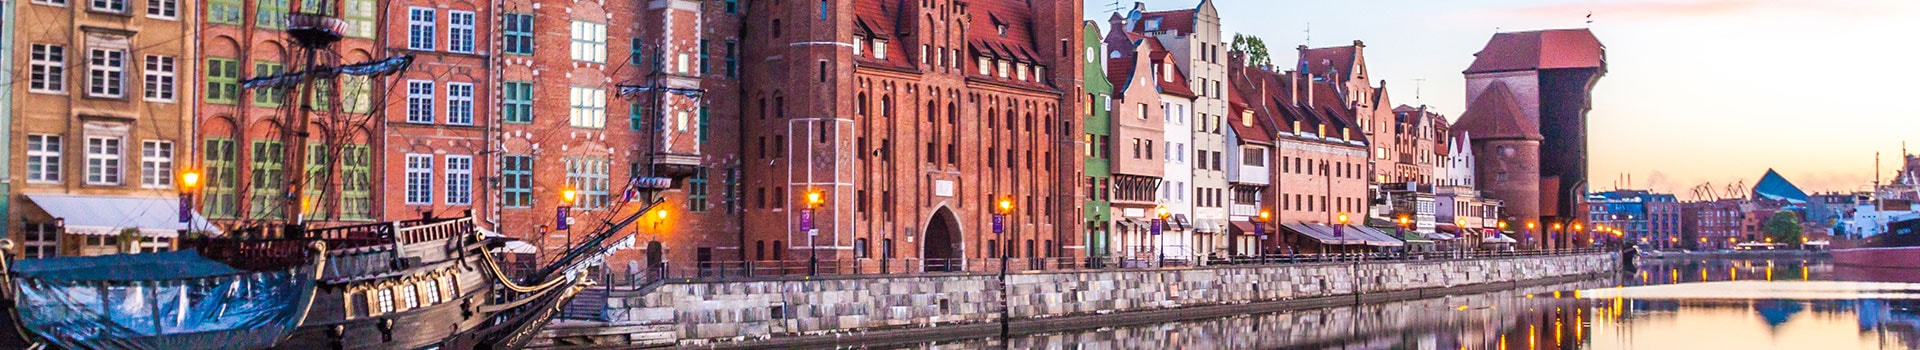 Goteborg - Gdansk